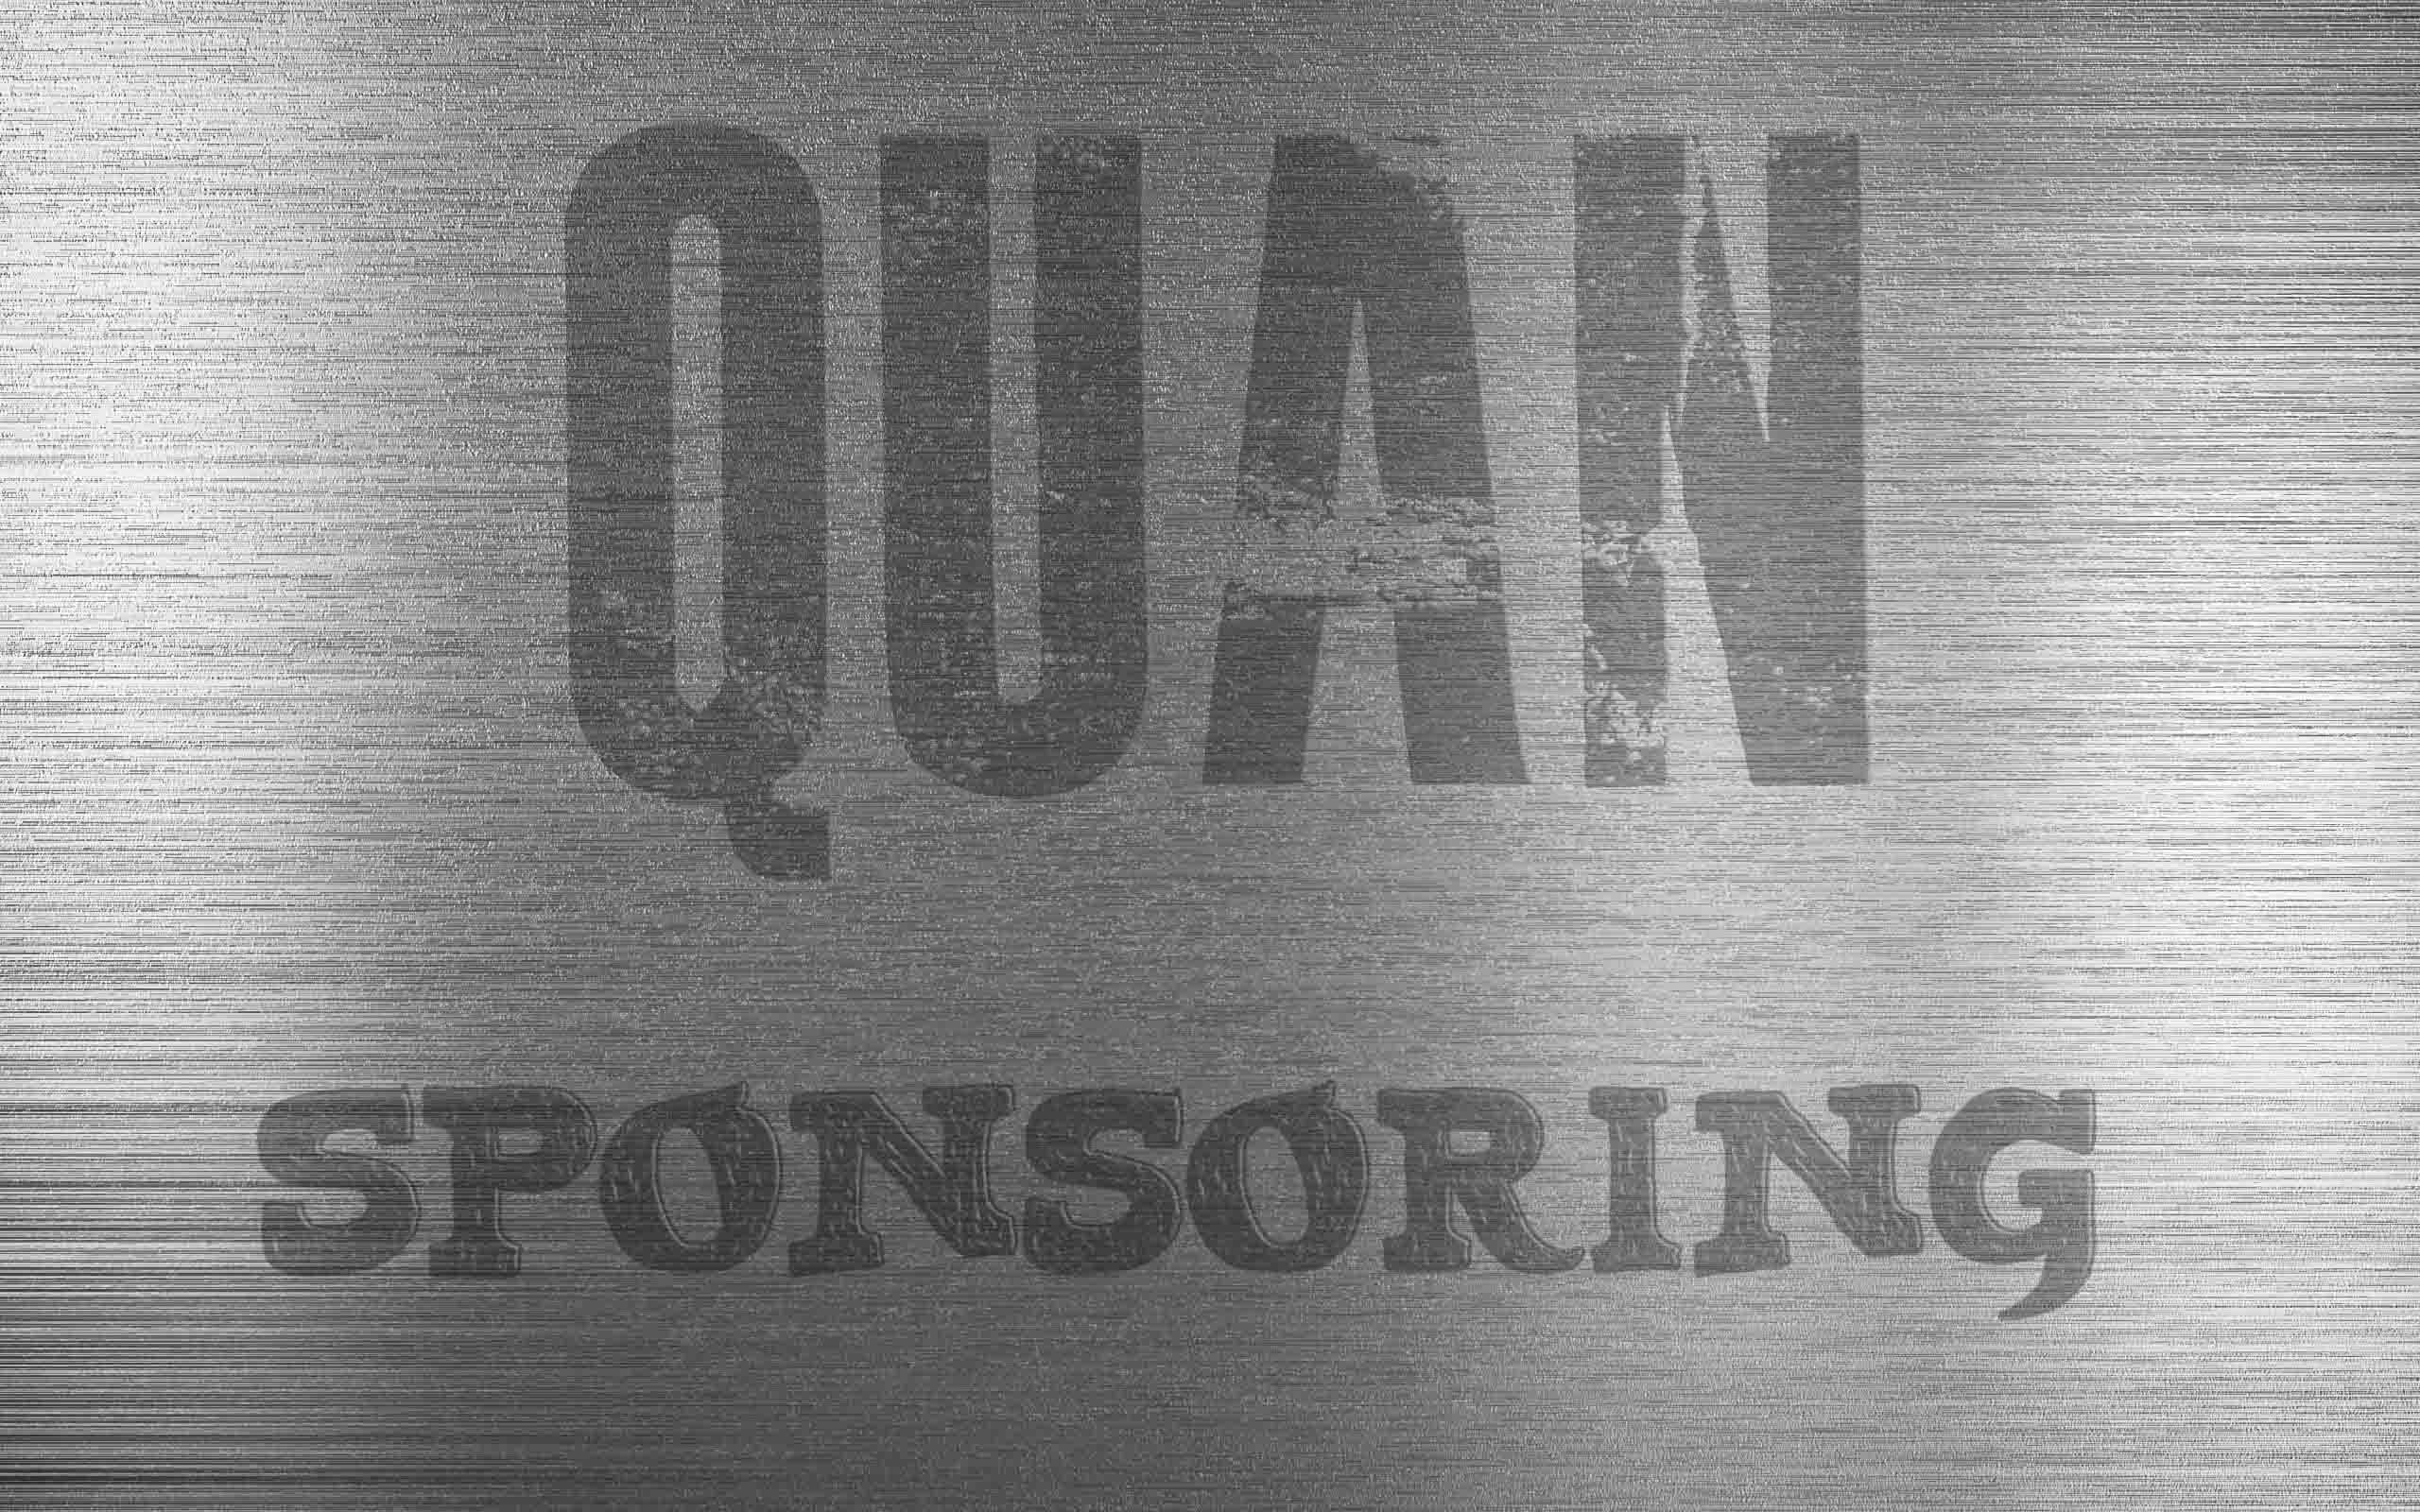 Quan Sponsoring - Refinanzierung und thematisierte Werbemittel